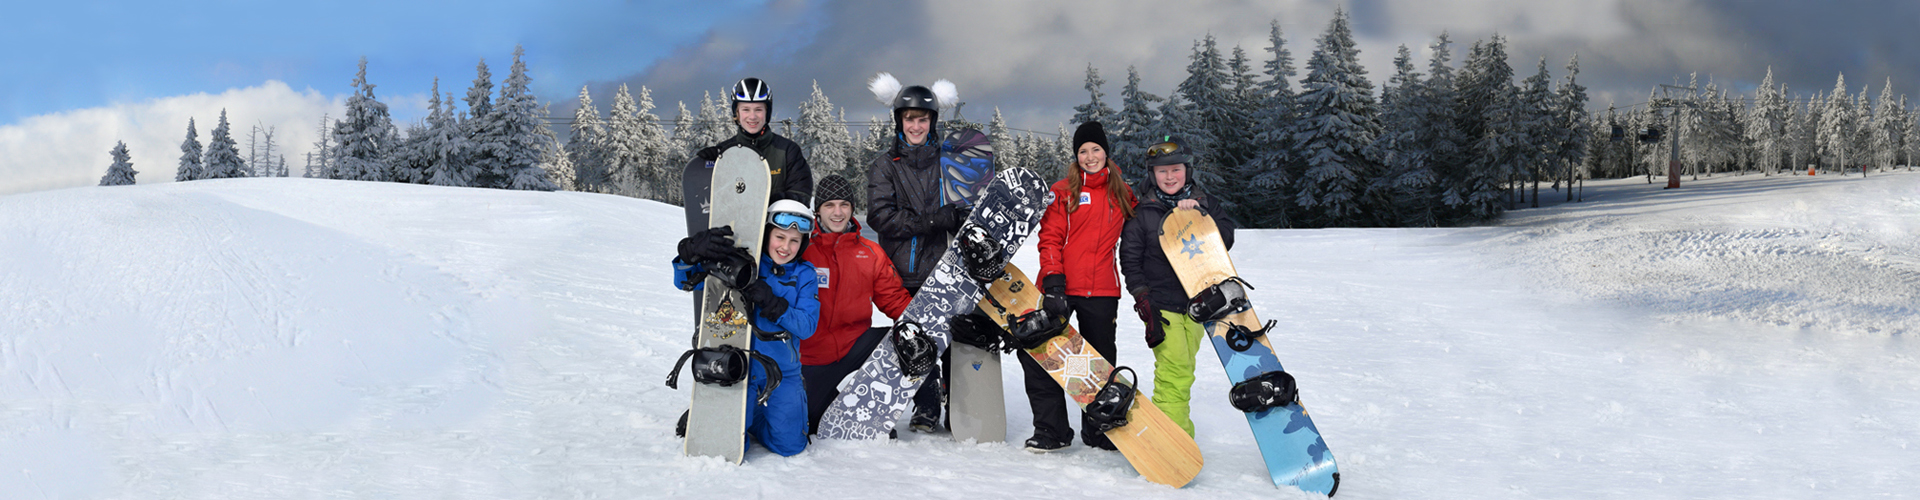 Snowboard school for children